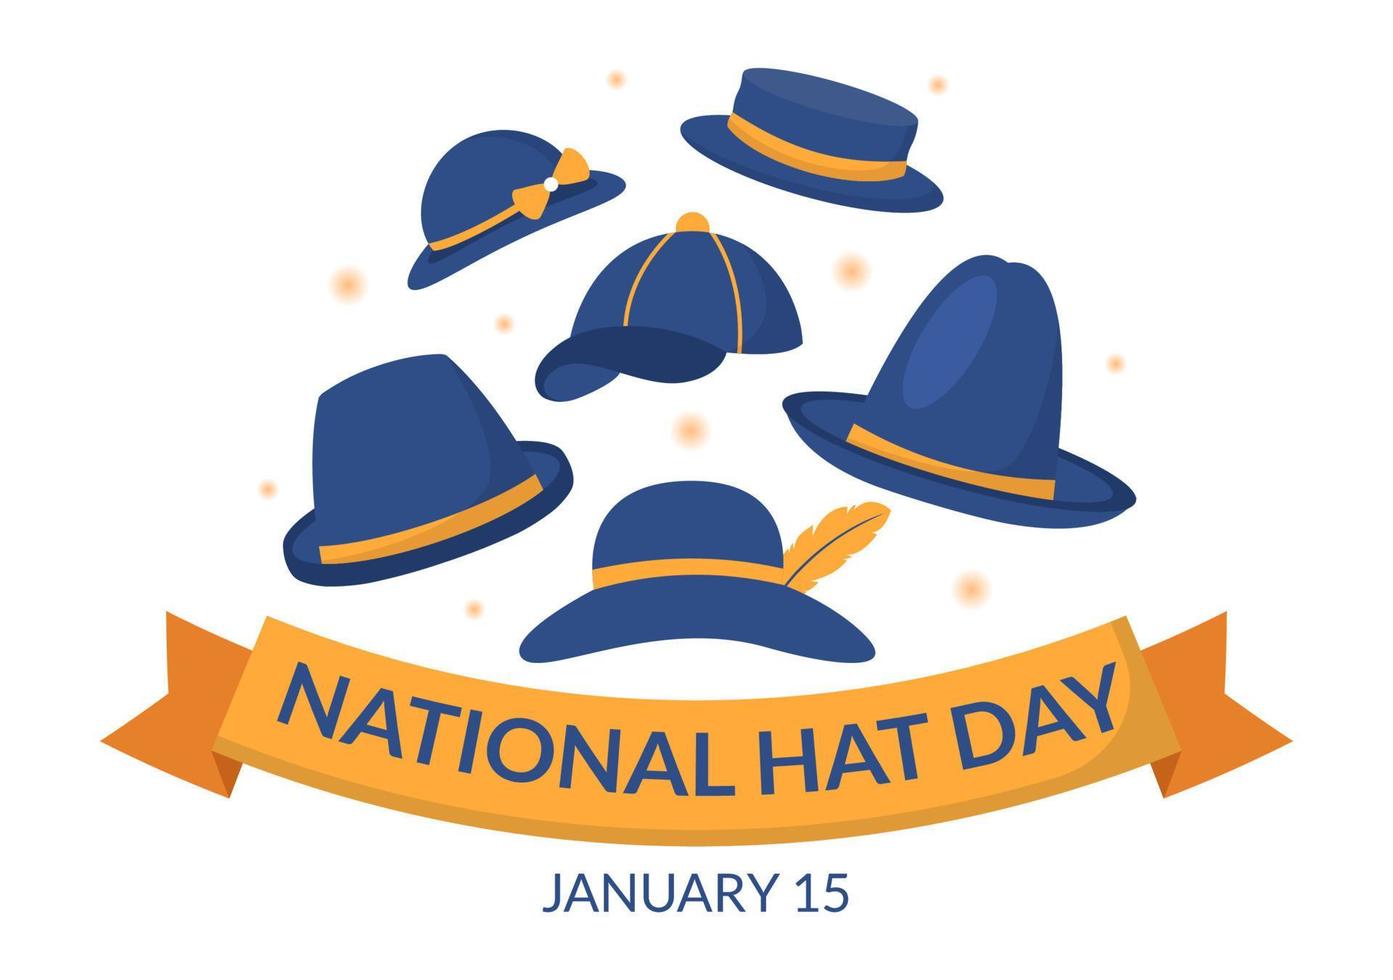 dia nacional do chapéu comemorado todos os anos em 15 de janeiro com chapéus fedora, boné, cloche ou derby na ilustração de modelos desenhados à mão de desenhos animados planos vetor